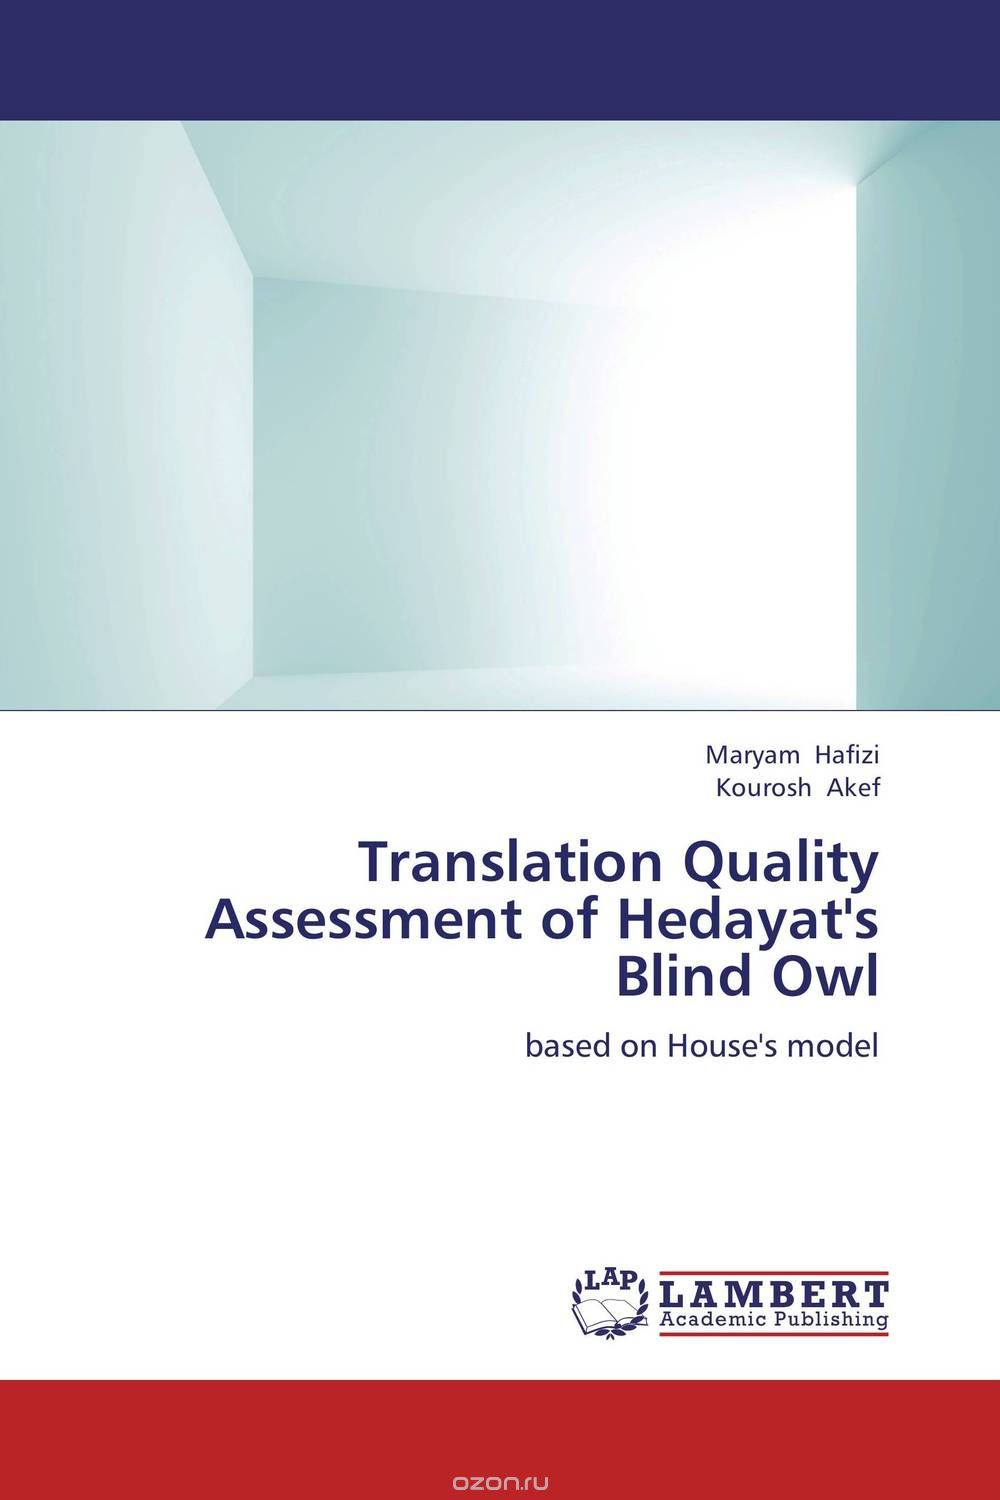 Translation Quality Assessment of Hedayat's Blind Owl